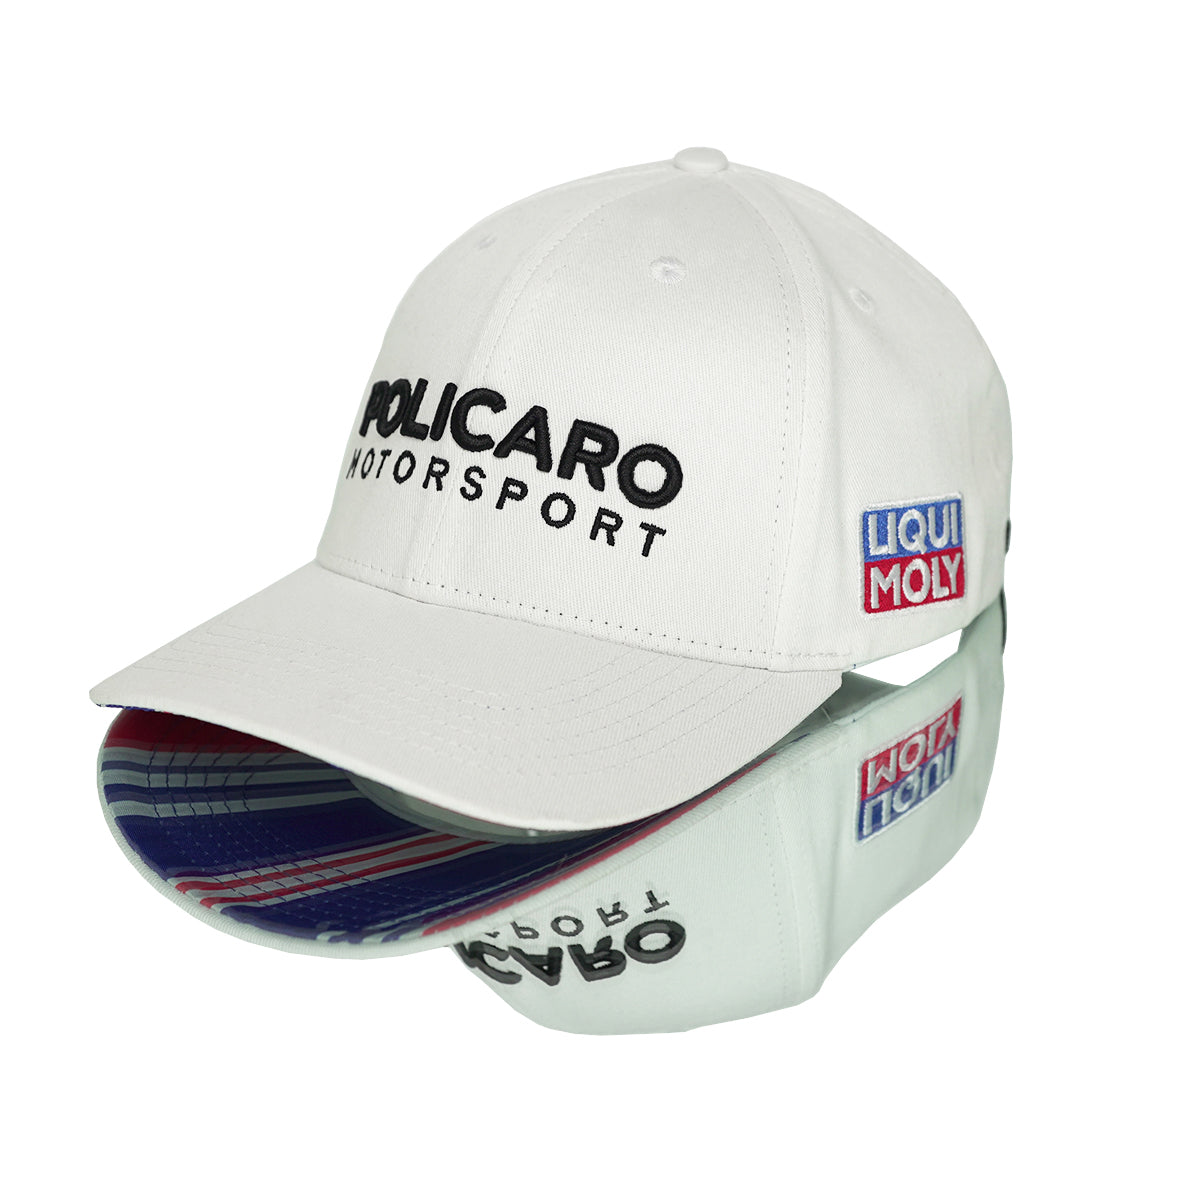 Policaro Motorsport - Curved